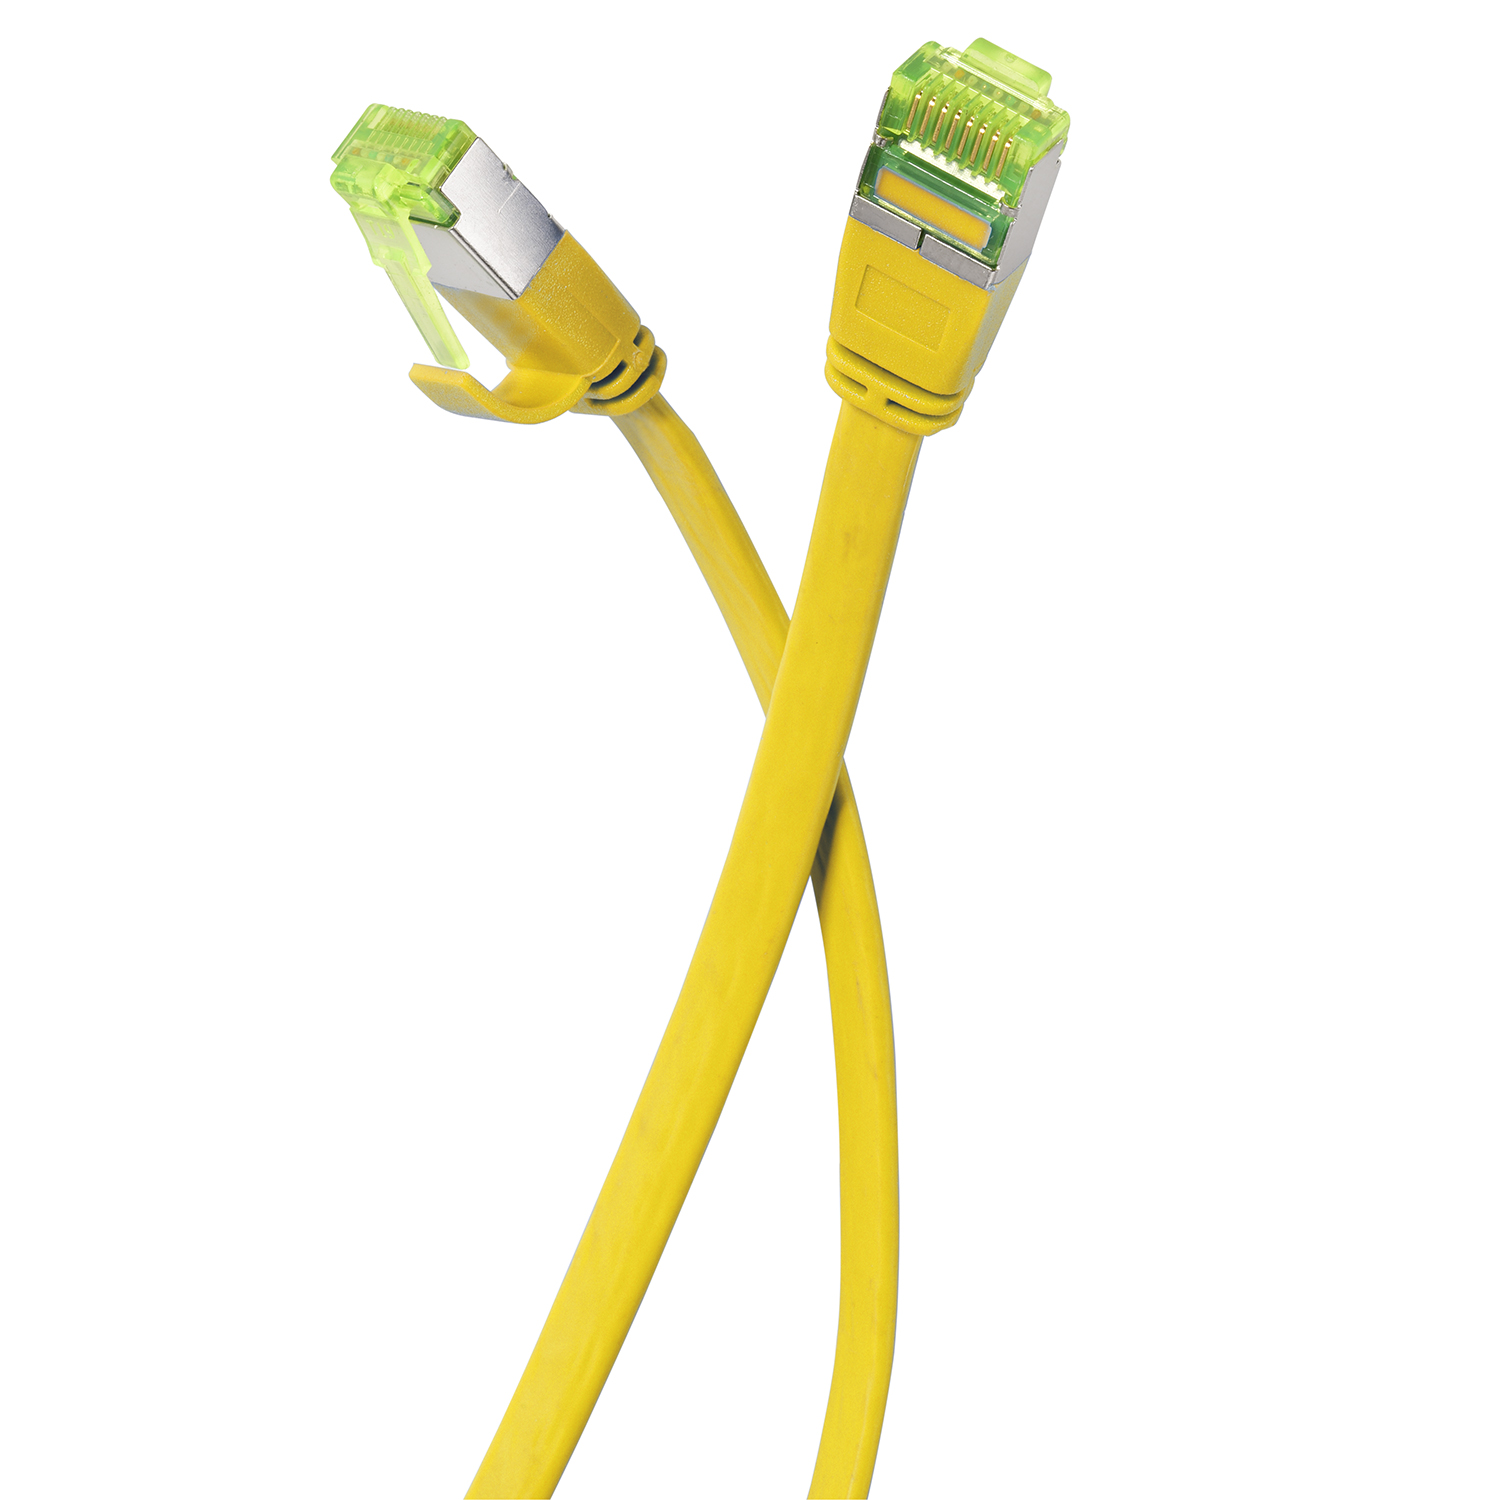 U/FTP 7,5 m 10 7,5m GBit, TPFNET gelb, Patchkabel / Flachkabel Netzwerkkabel,